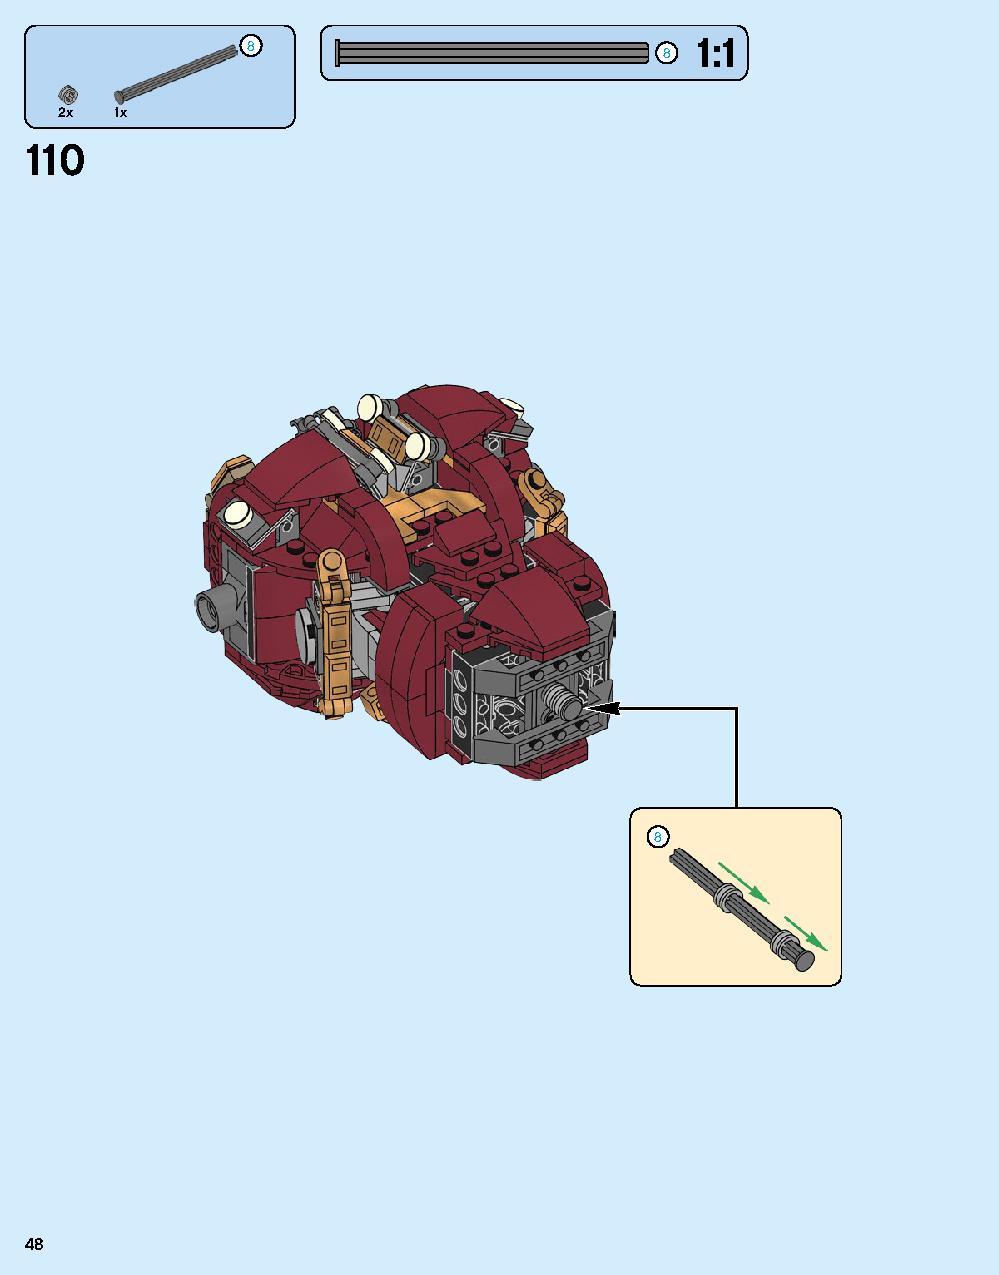 ハルクバスター：ウルトロン・エディション 76105 レゴの商品情報 レゴの説明書・組立方法 48 page